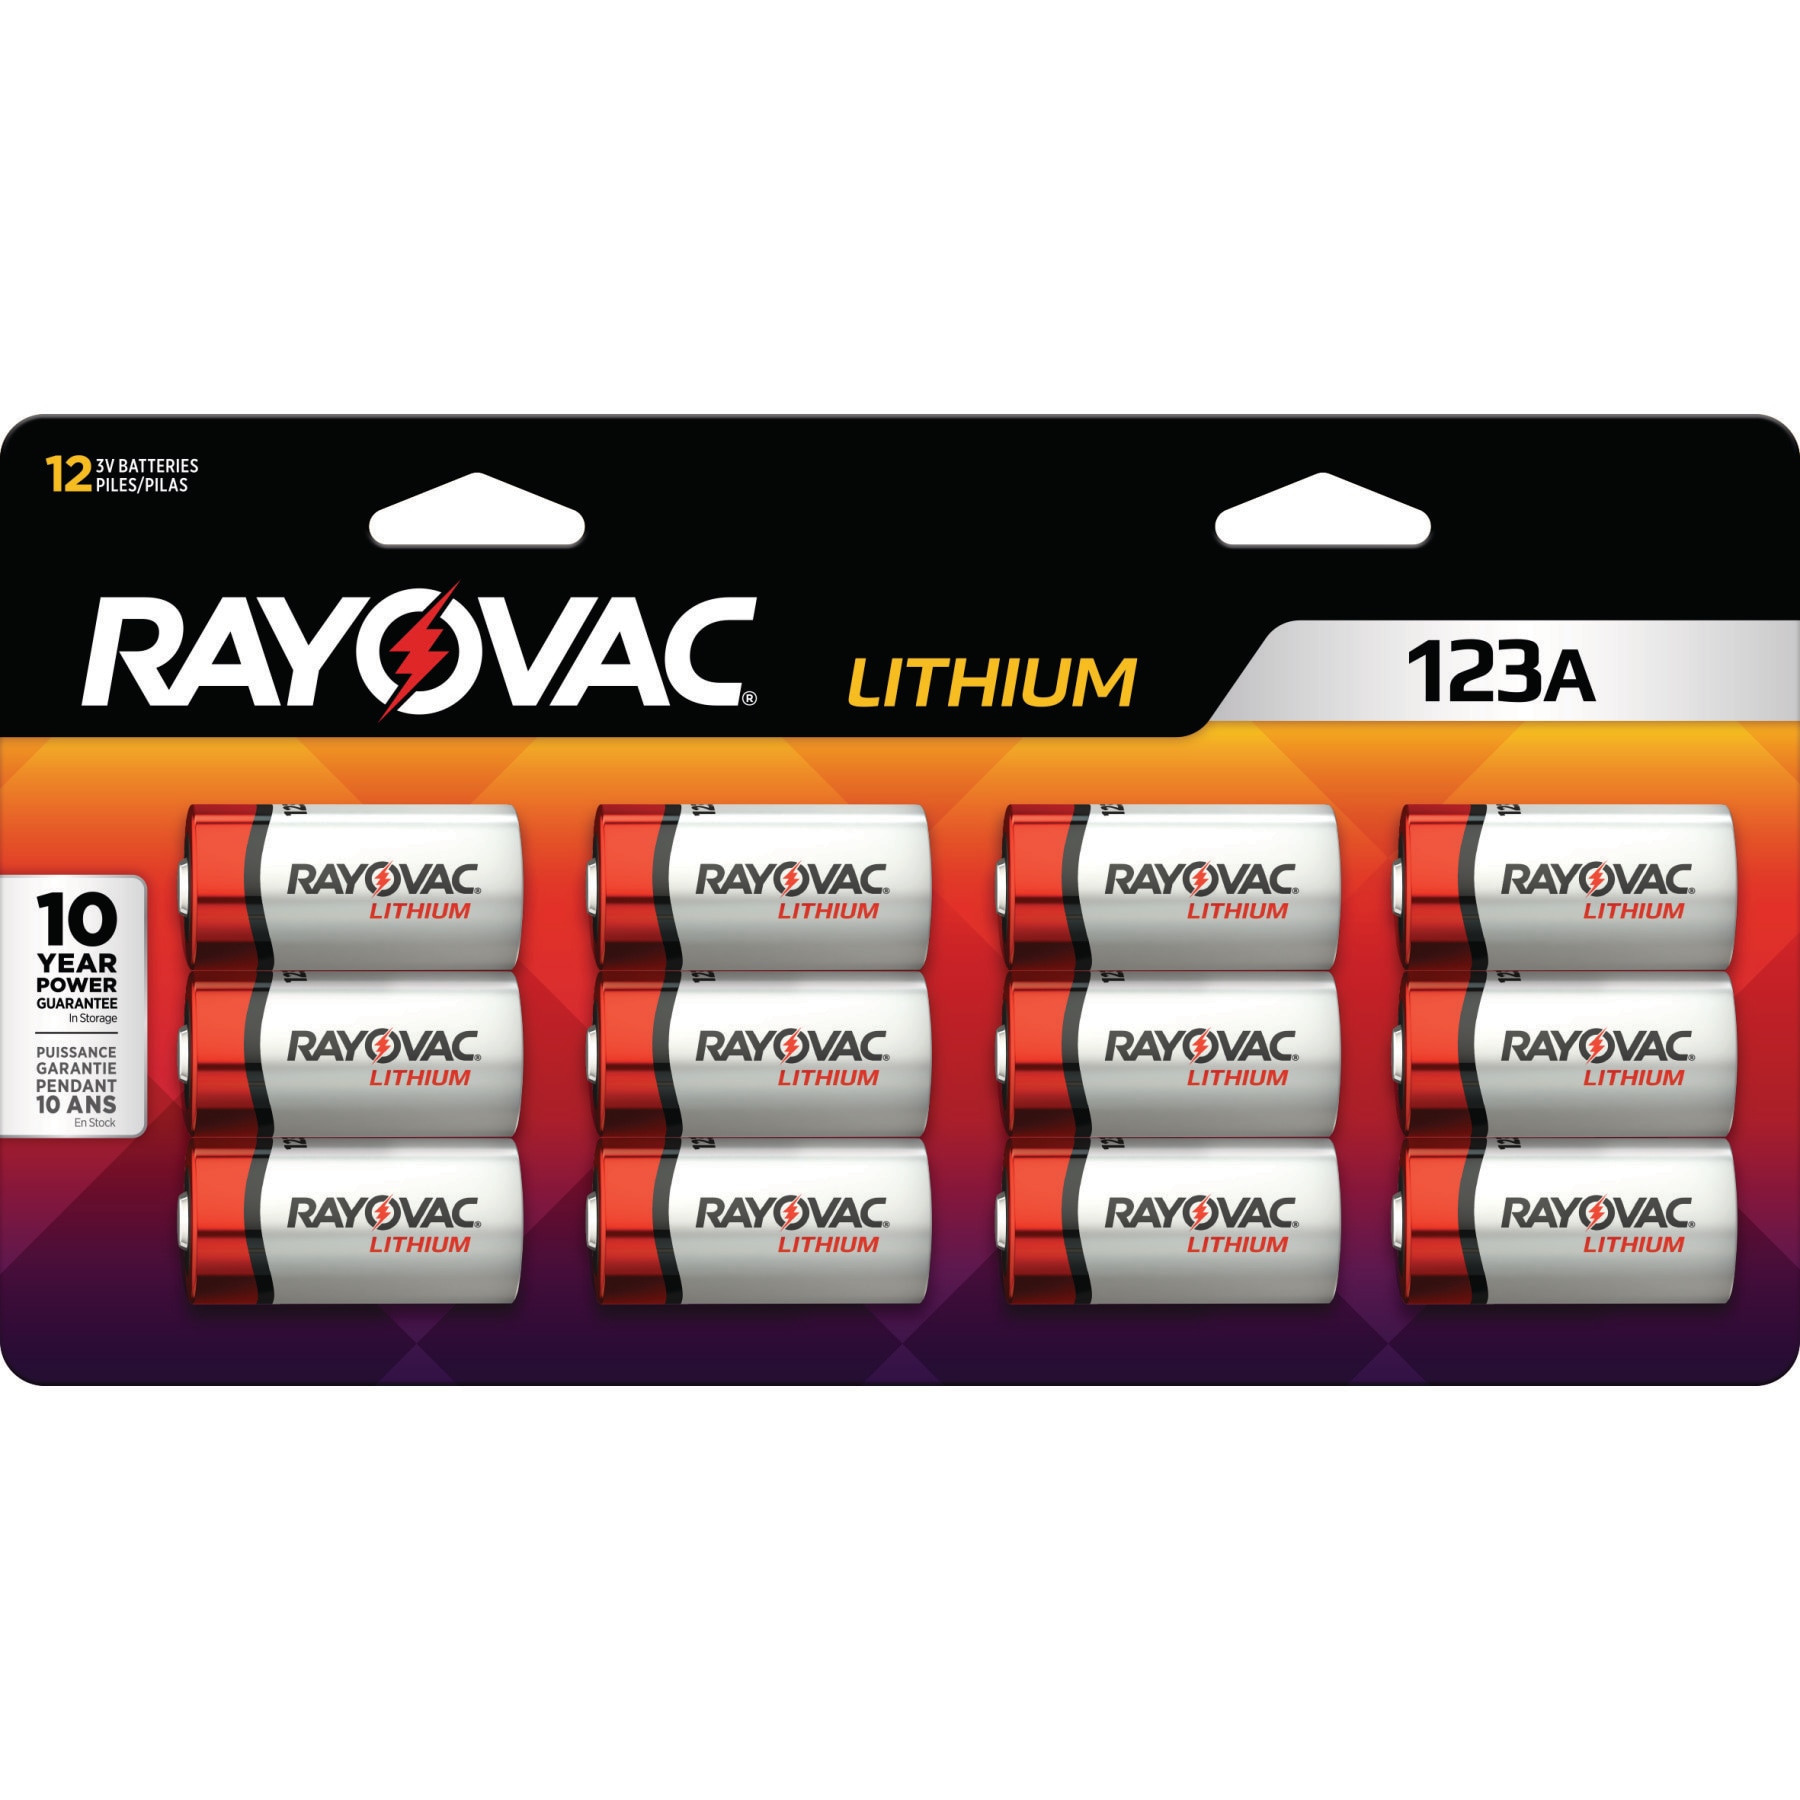 123A Lithium - Rayovac